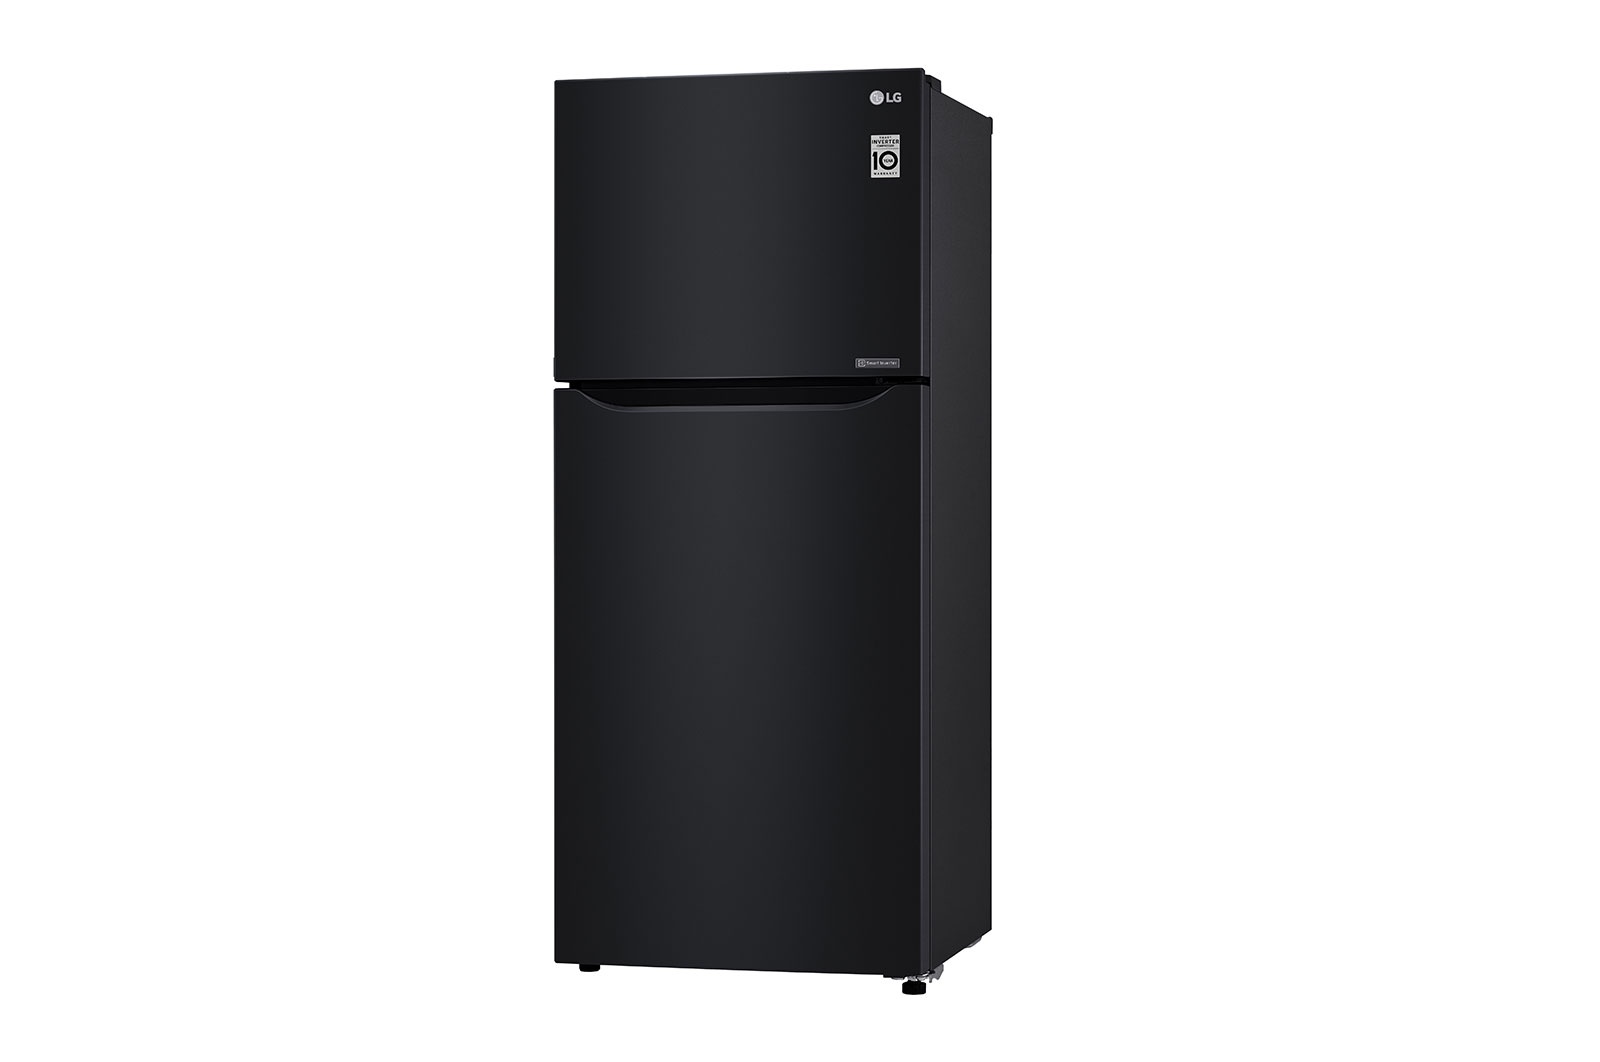 Tủ lạnh Inverter LG 427 lít GN-B422WB cho khả năng vận hành êm ái, chống ồn hiệu quả